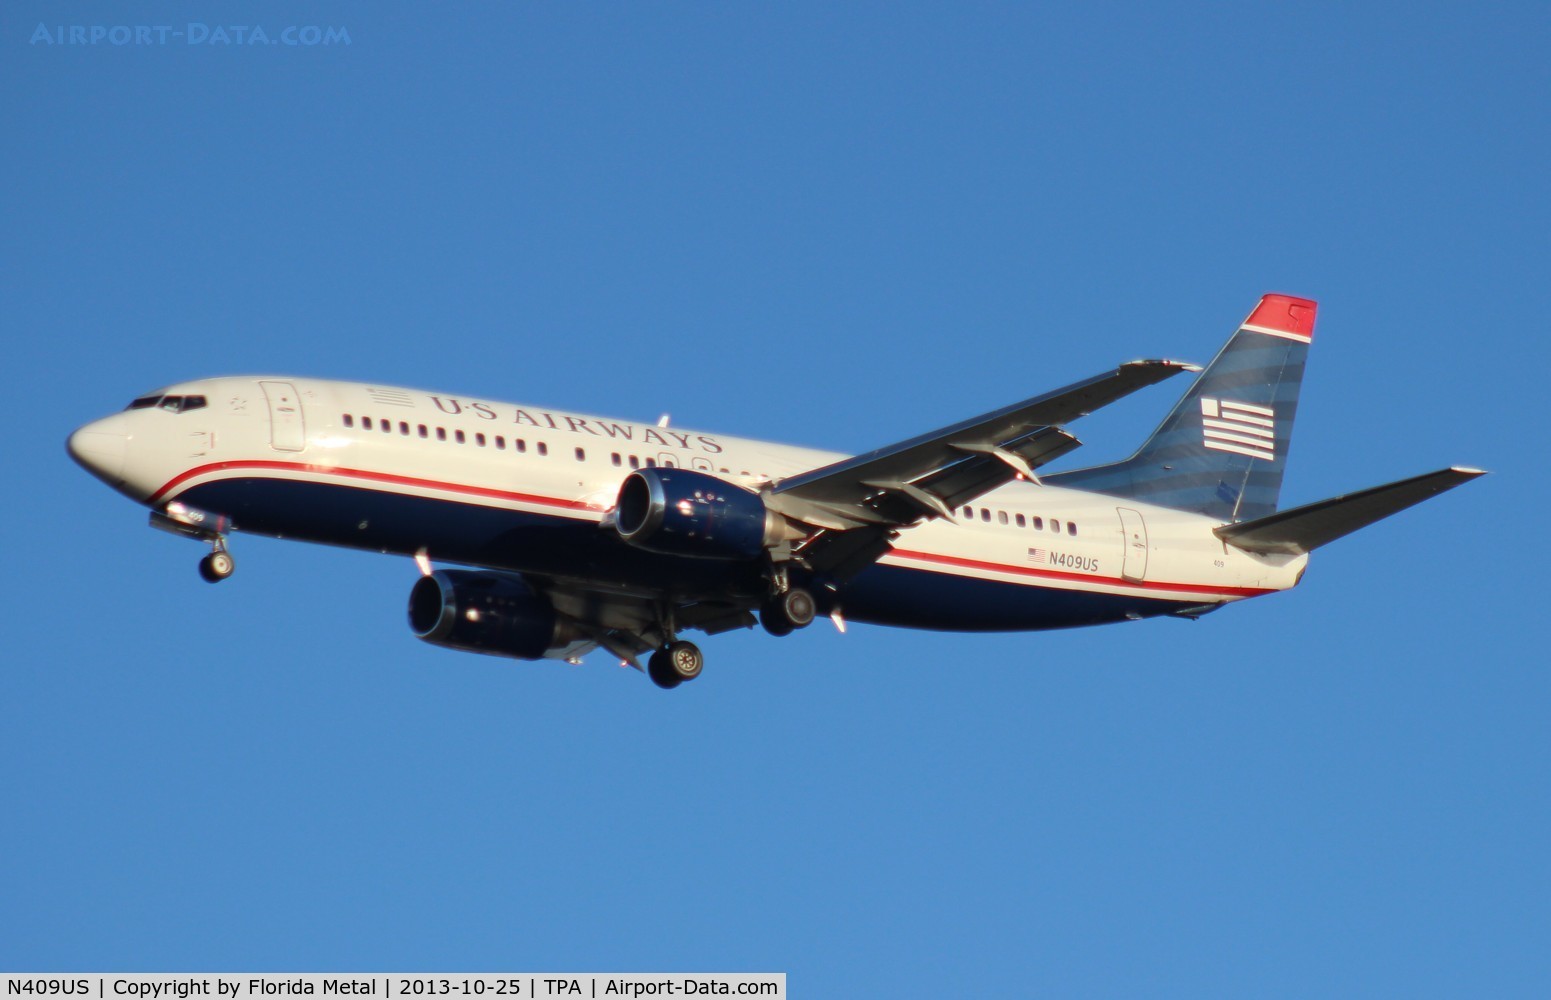 N409US, 1988 Boeing 737-401 C/N 23879, US Airways 737-400